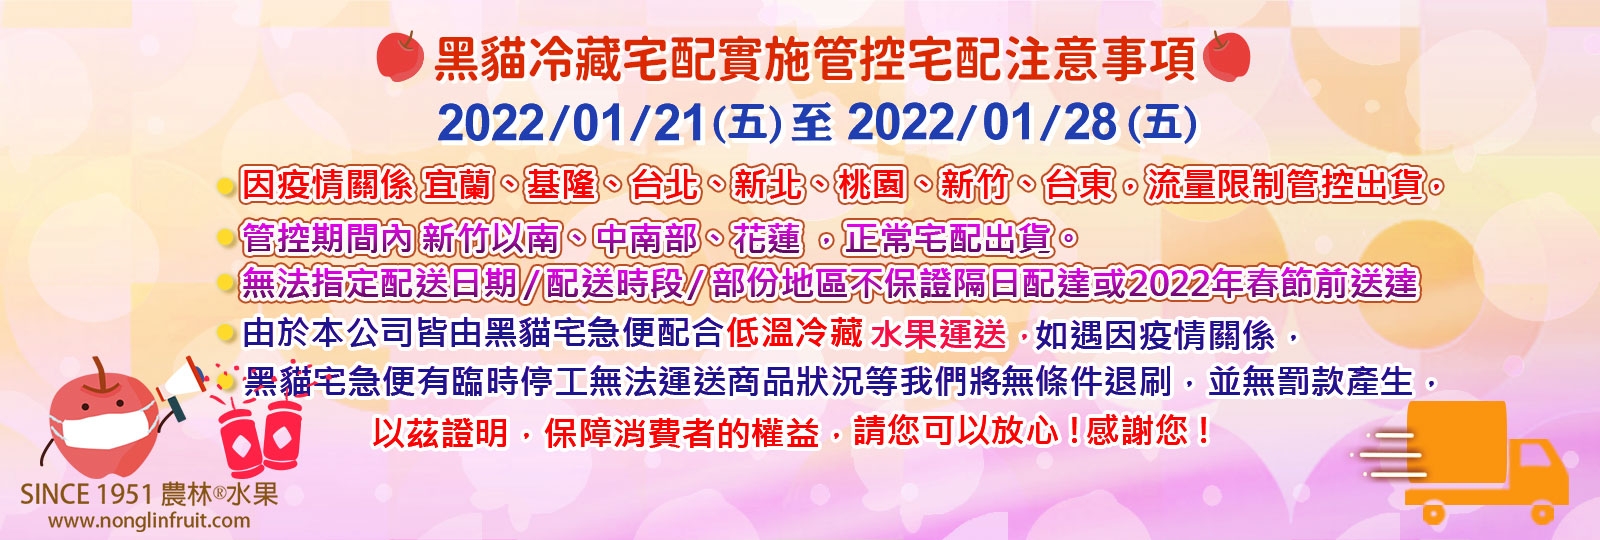 2022-春節期間-黑貓宅配調整-2022-01-23-0710